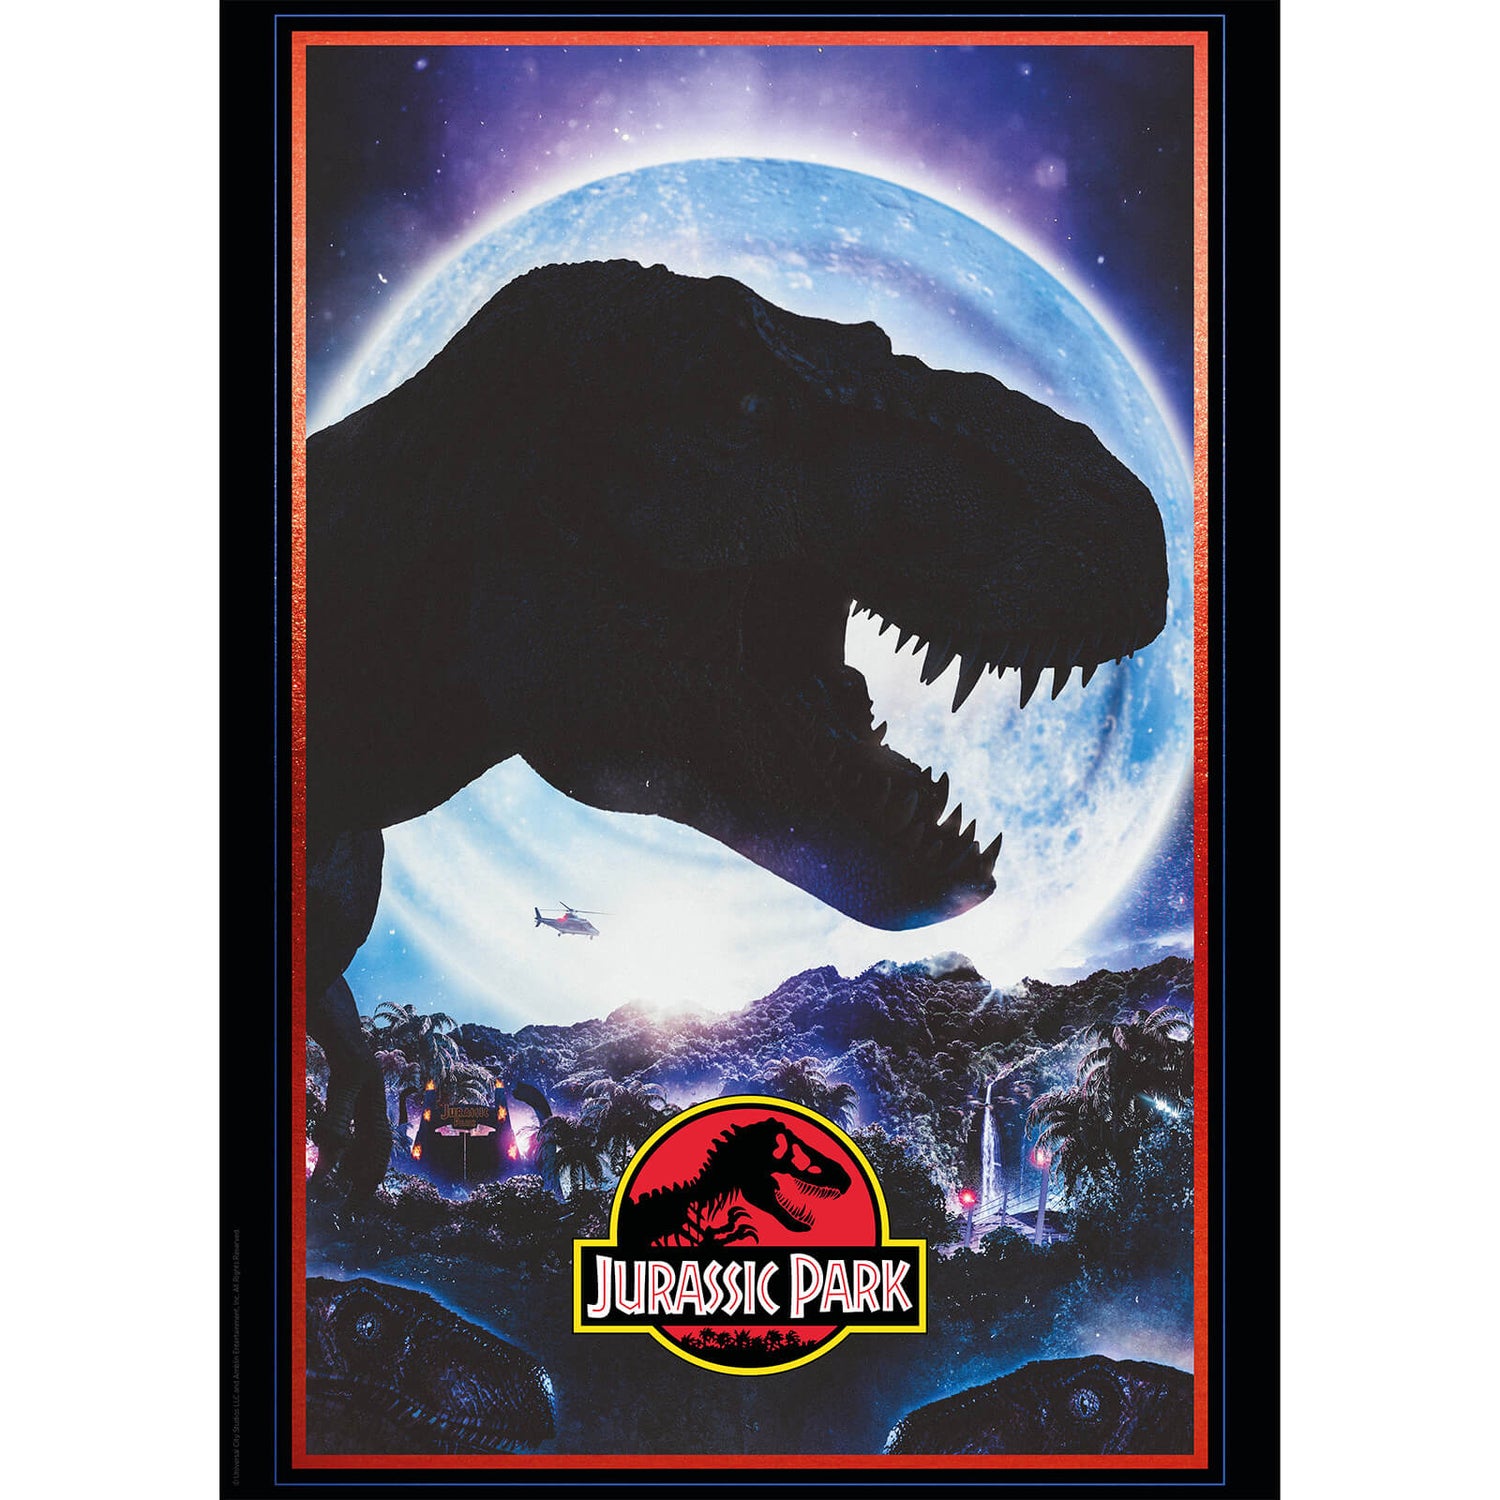 Fanattik Jurassic Park Limited Edition Art Print